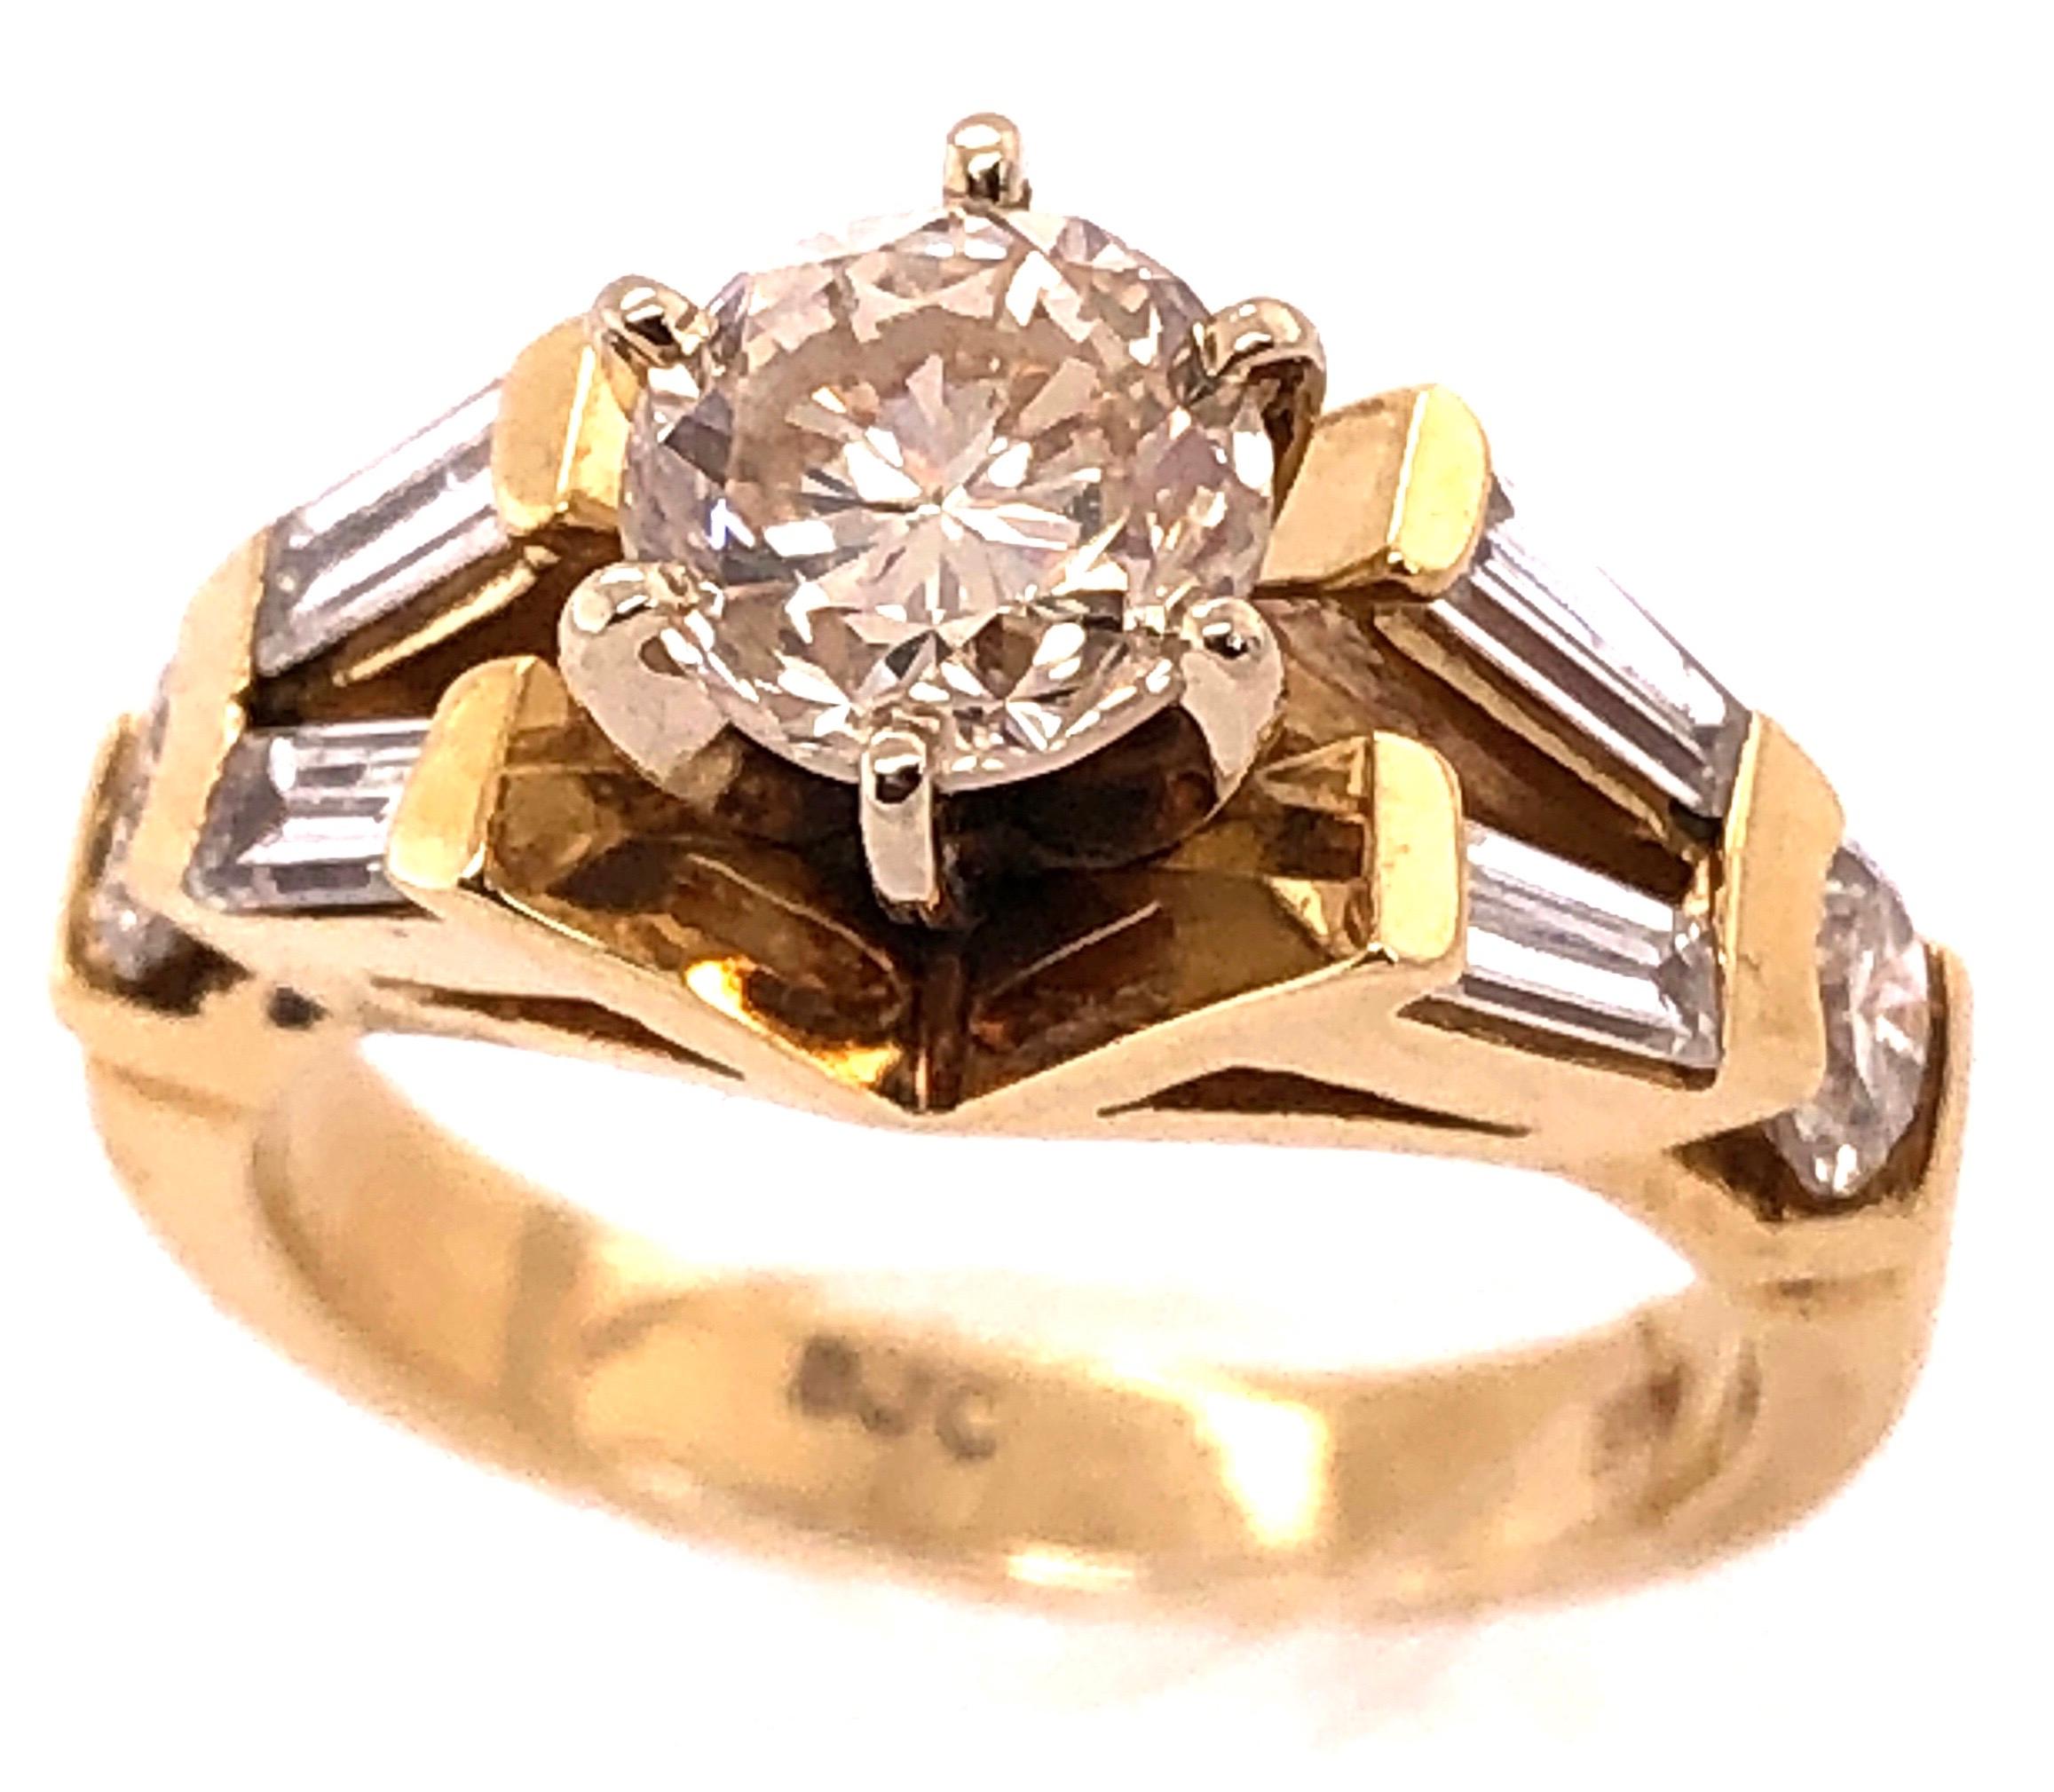 14 Karat Gelbgold Verlobungsring 1,50 Gesamtgewicht der Diamanten.
Größe 5.5
6,29 Gramm Gesamtgewicht.
Mittelstein ca. .90